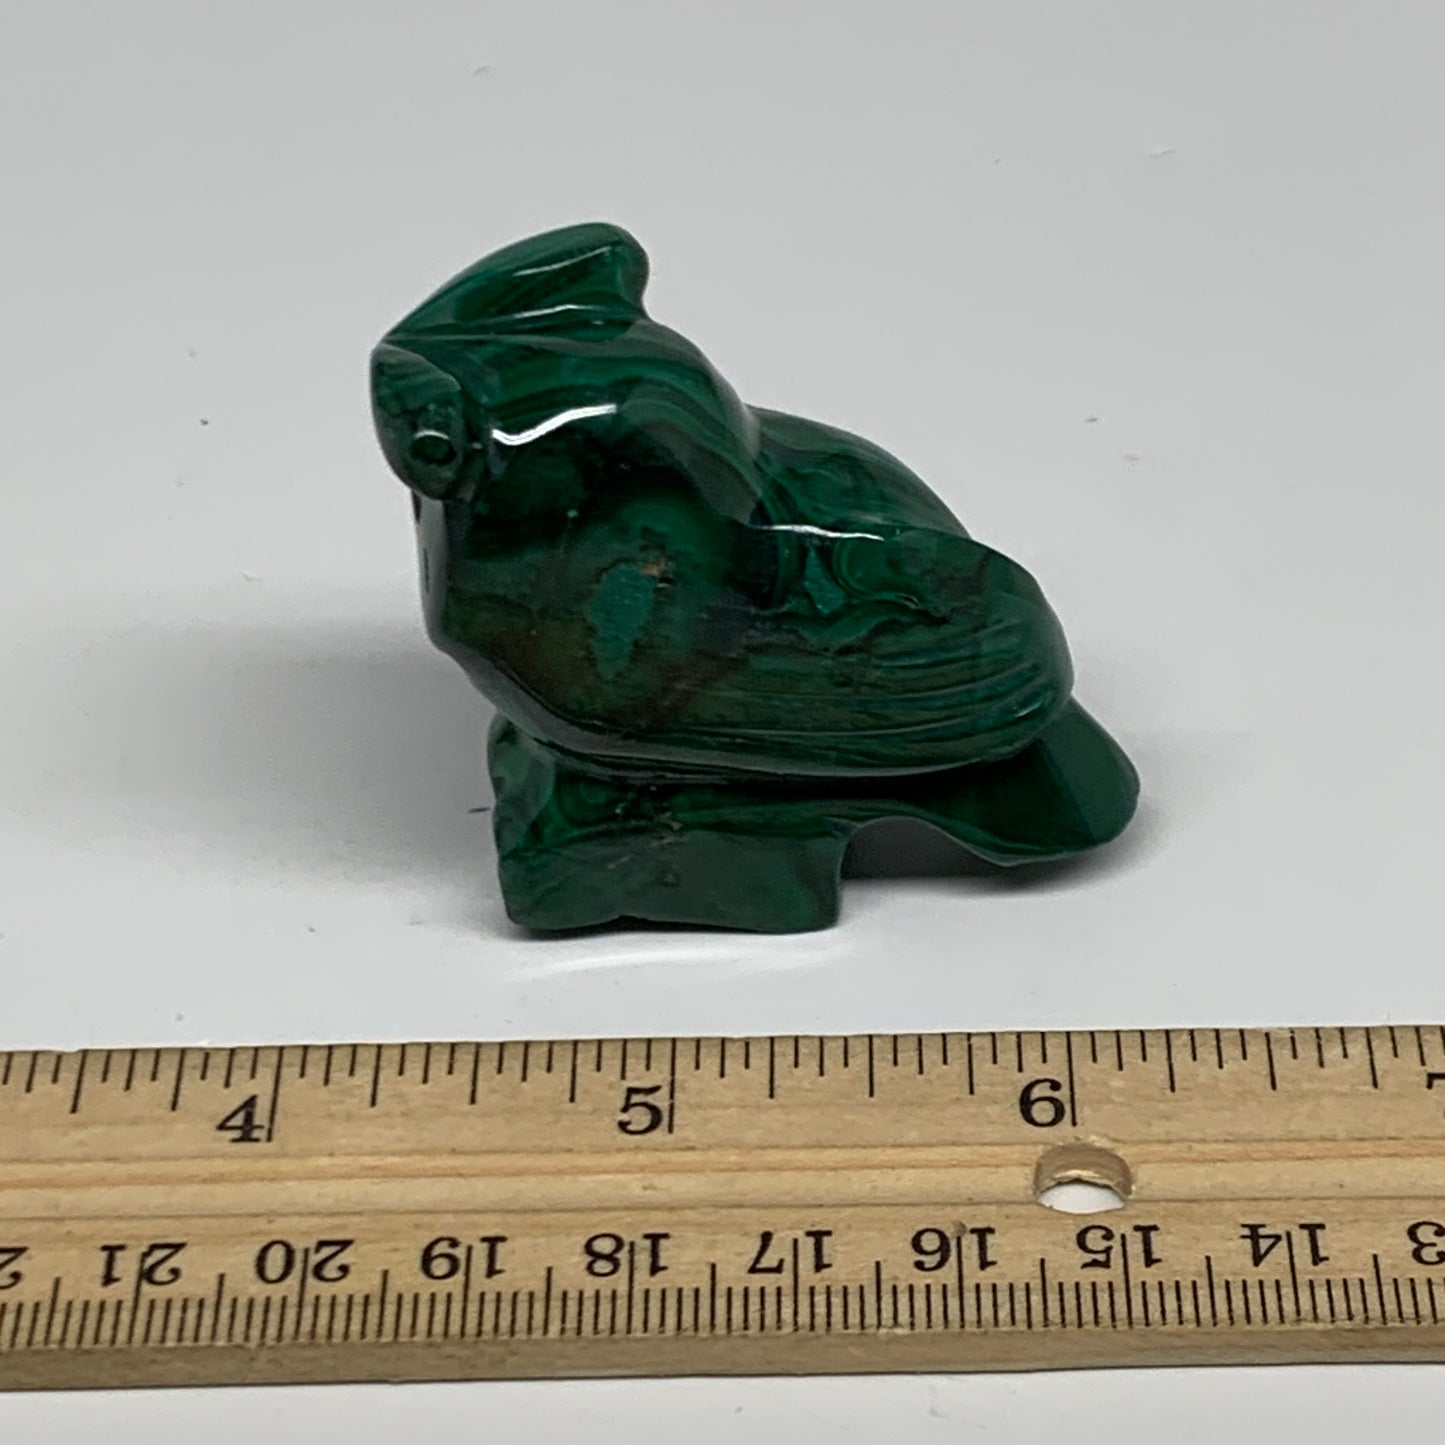 90g, 2.4"x1.8"x0.9" Natural Solid Malachite Penguin Figurine @Congo, B32749